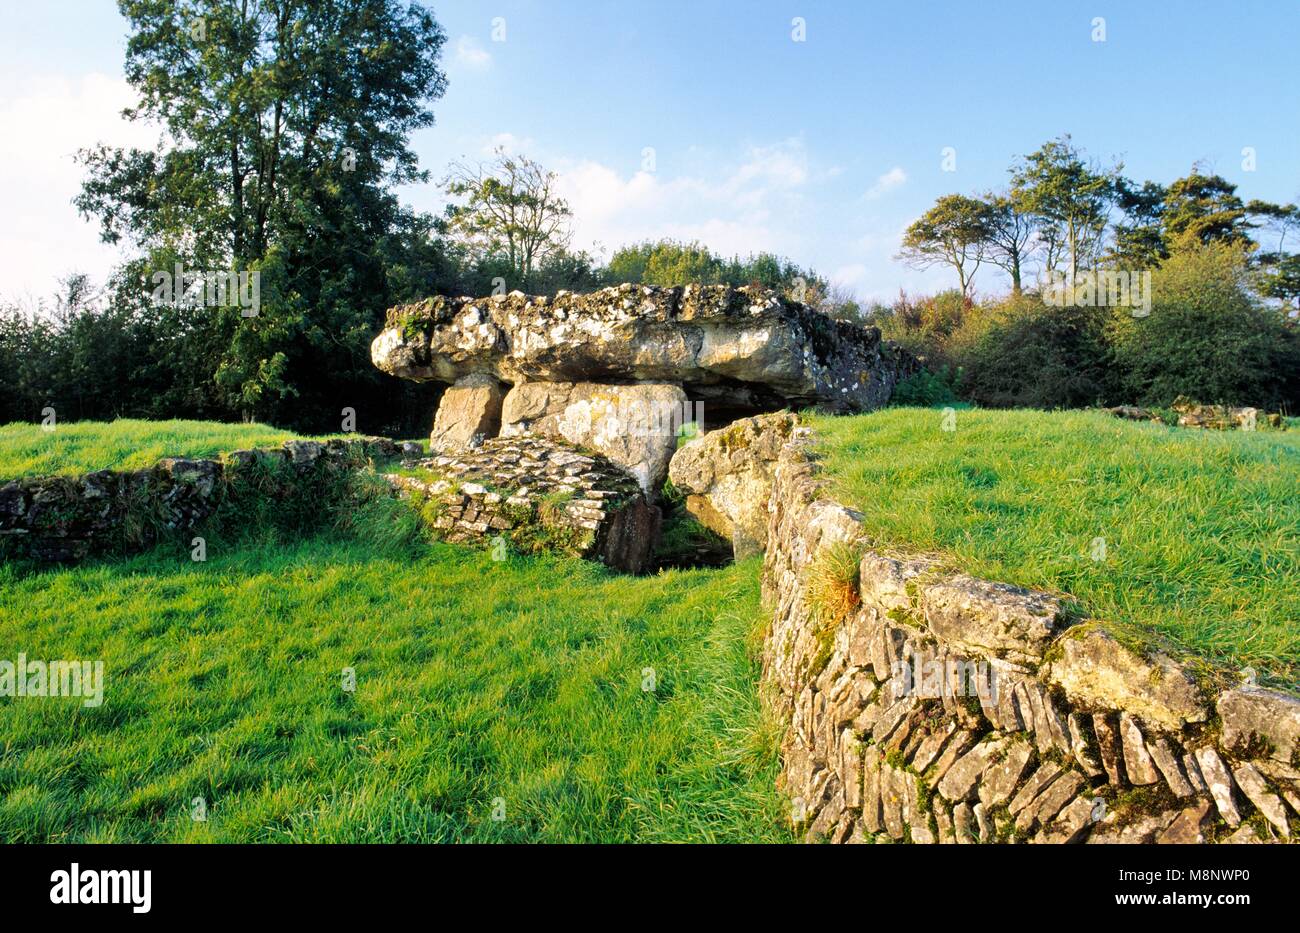 Tinkinswood chambre funéraire néolithique préhistorique mound et ciste centrale mégalithes près de Barry, Glamorgan du Sud, dans le sud du Pays de Galles, Royaume-Uni Banque D'Images